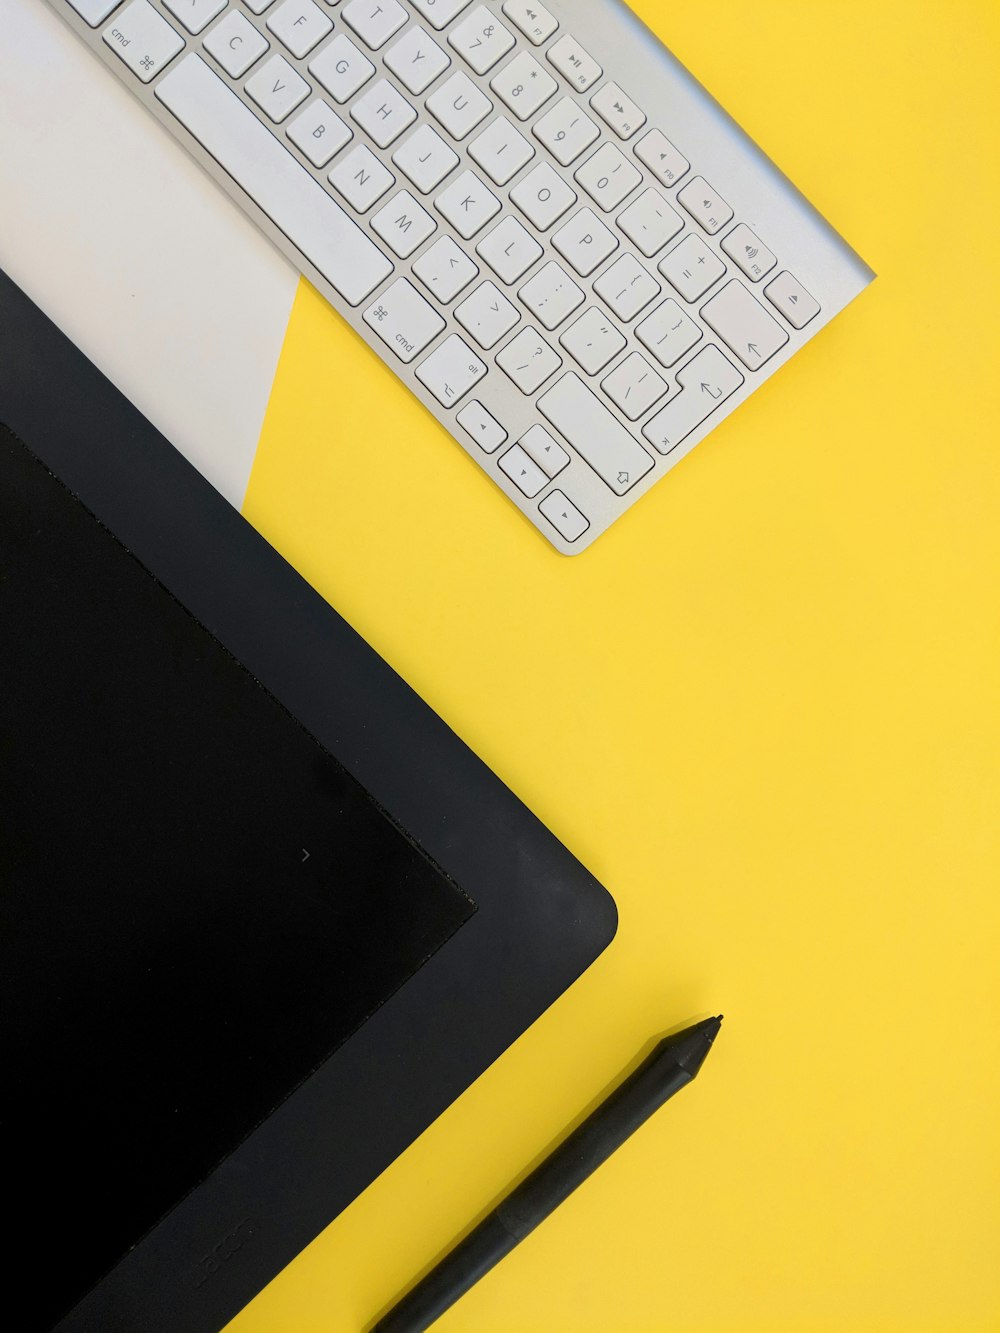 teclado sem fio Apple cinza ao lado do computador tablet preto e caneta stylus